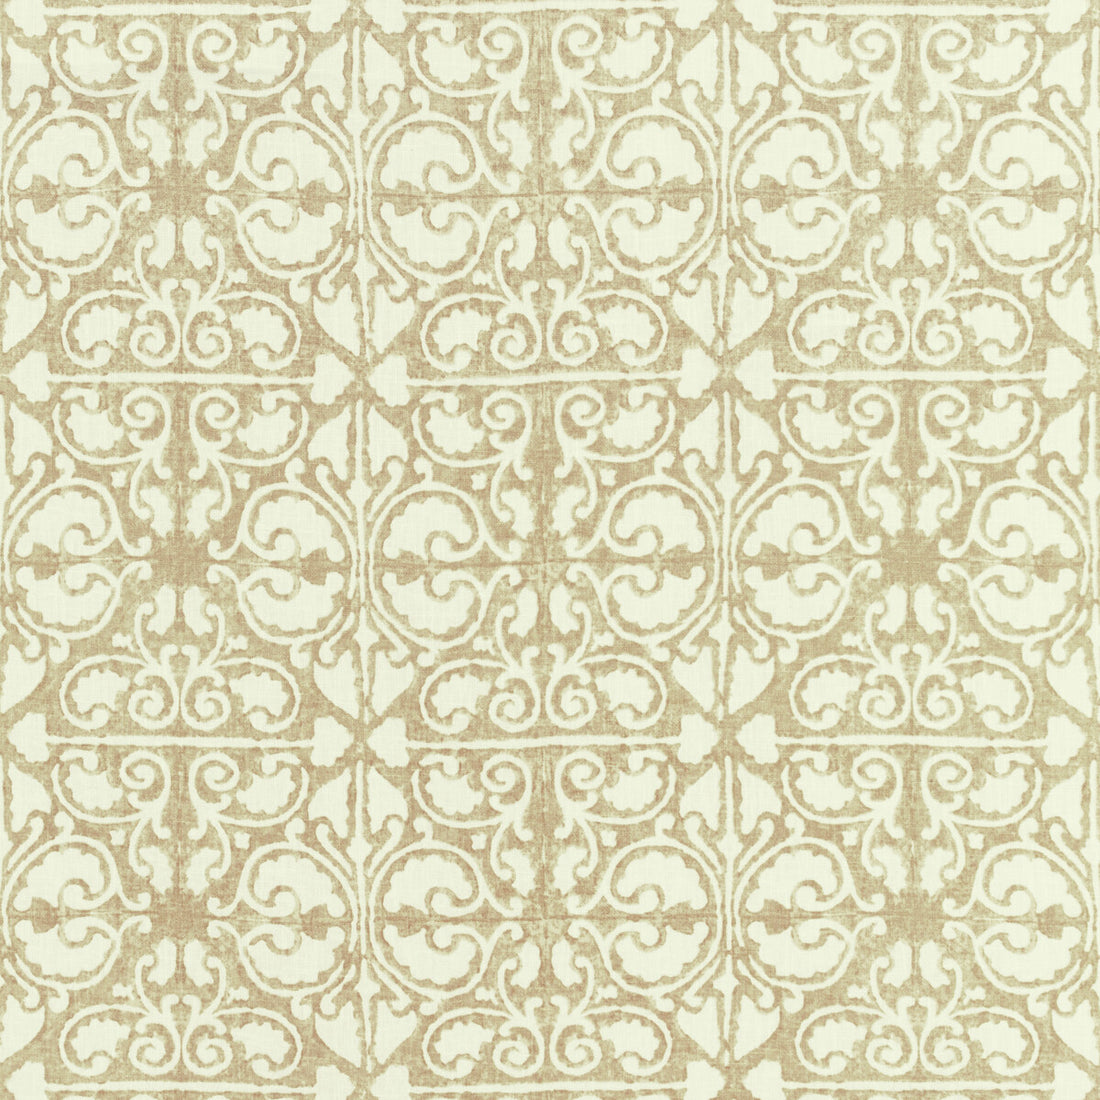 Kravet Basics fabric in agra tile-16 color - pattern AGRA TILE.16.0 - by Kravet Basics in the L&